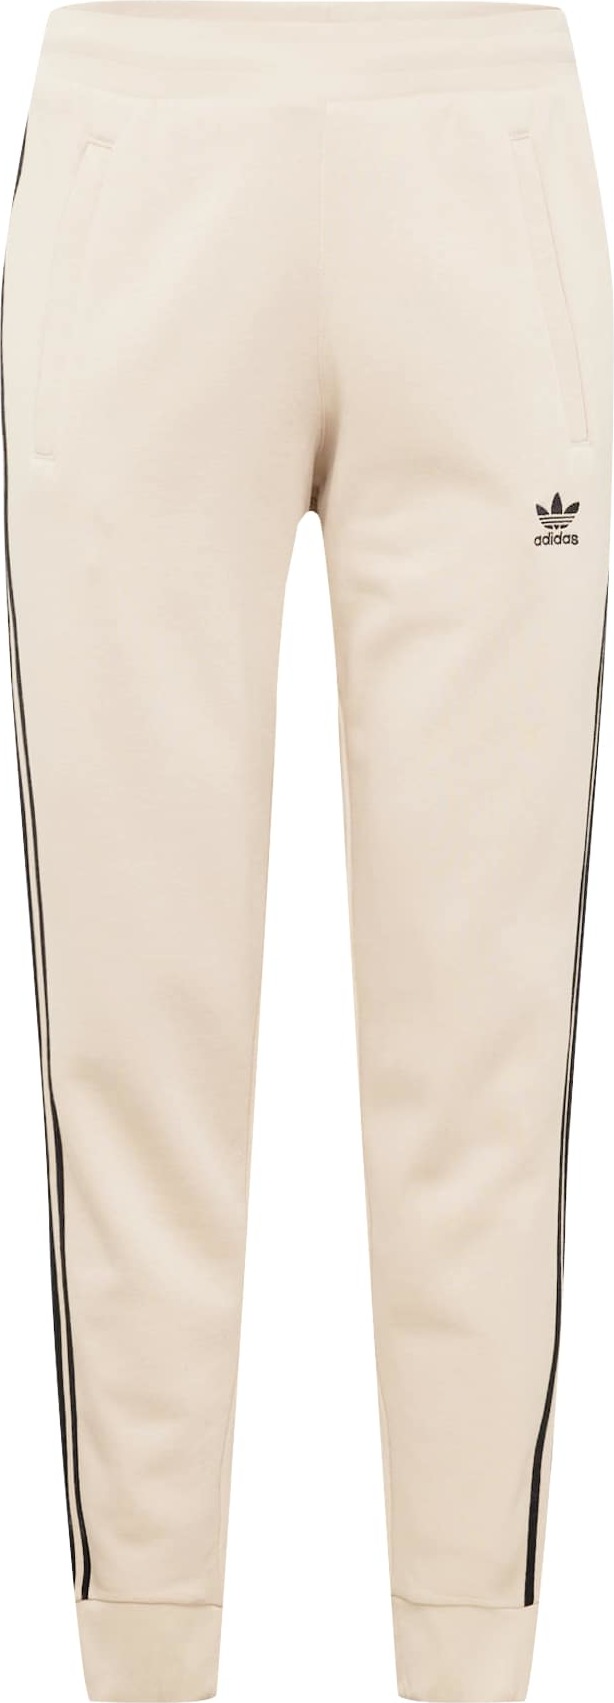 Kalhoty 'Adicolor Classics 3-Stripes' adidas Originals černá / barva bílé vlny